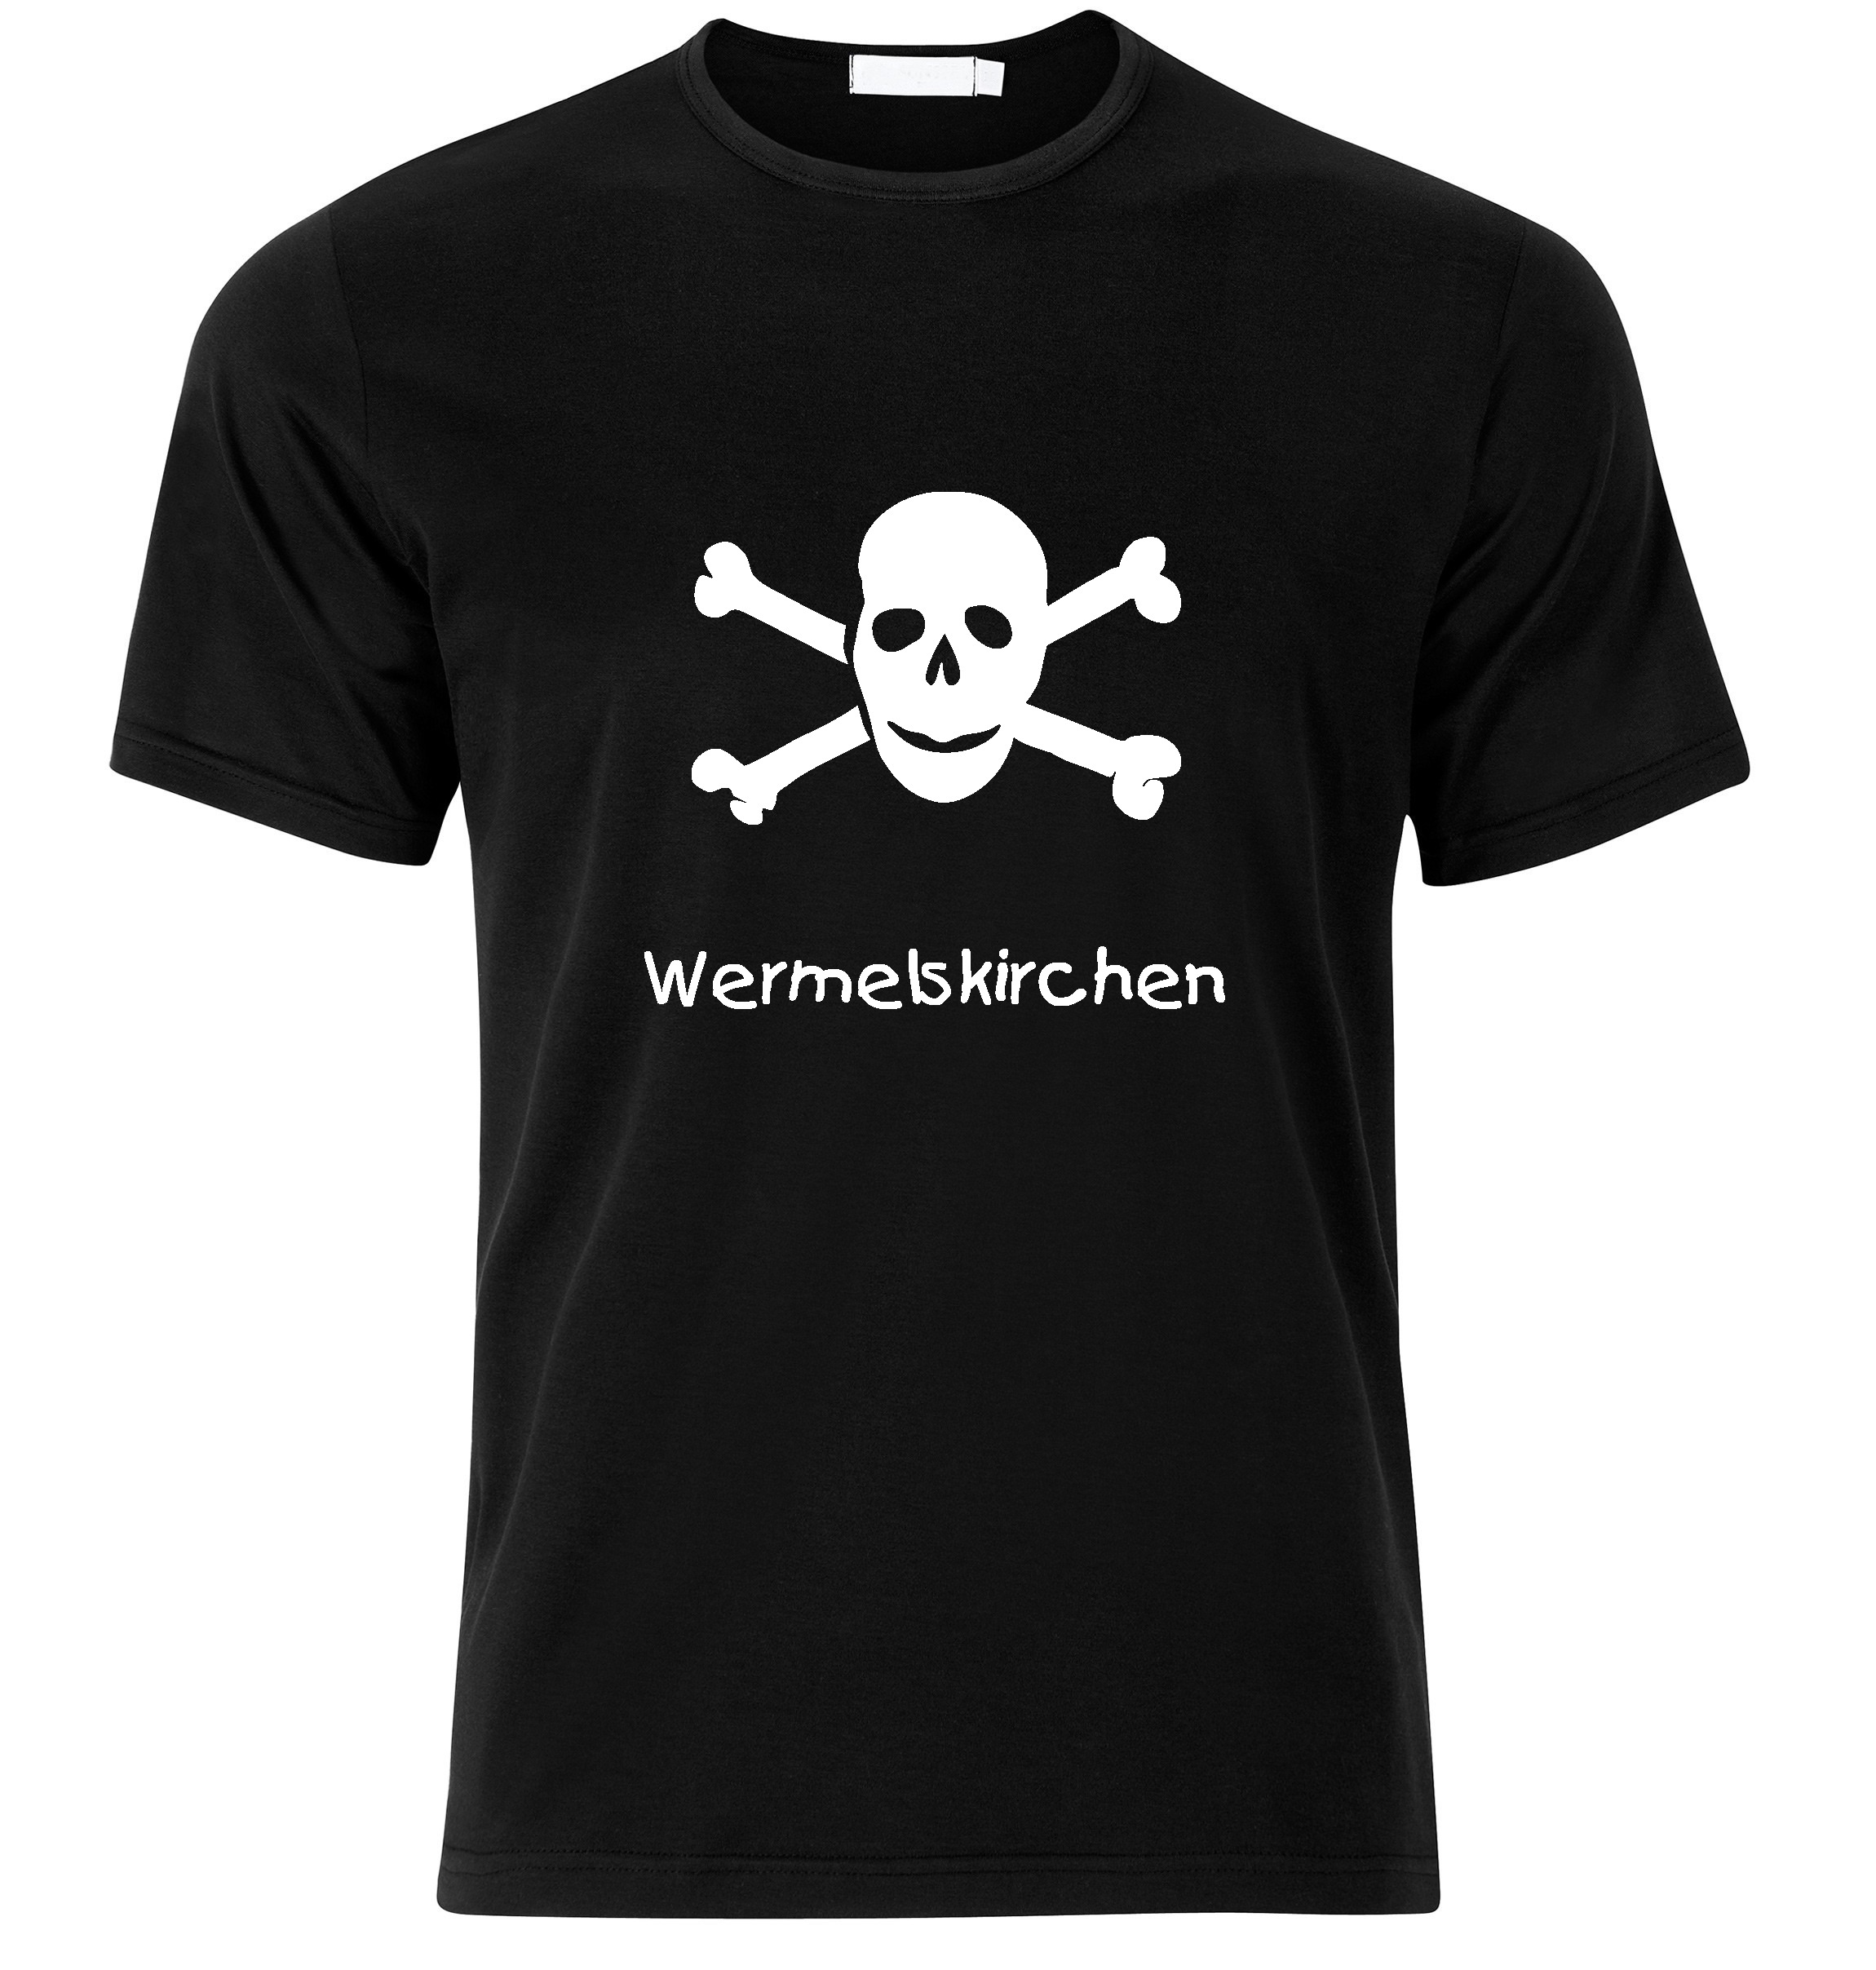 T-Shirt Wermelskirchen Jolly Roger, Totenkopf